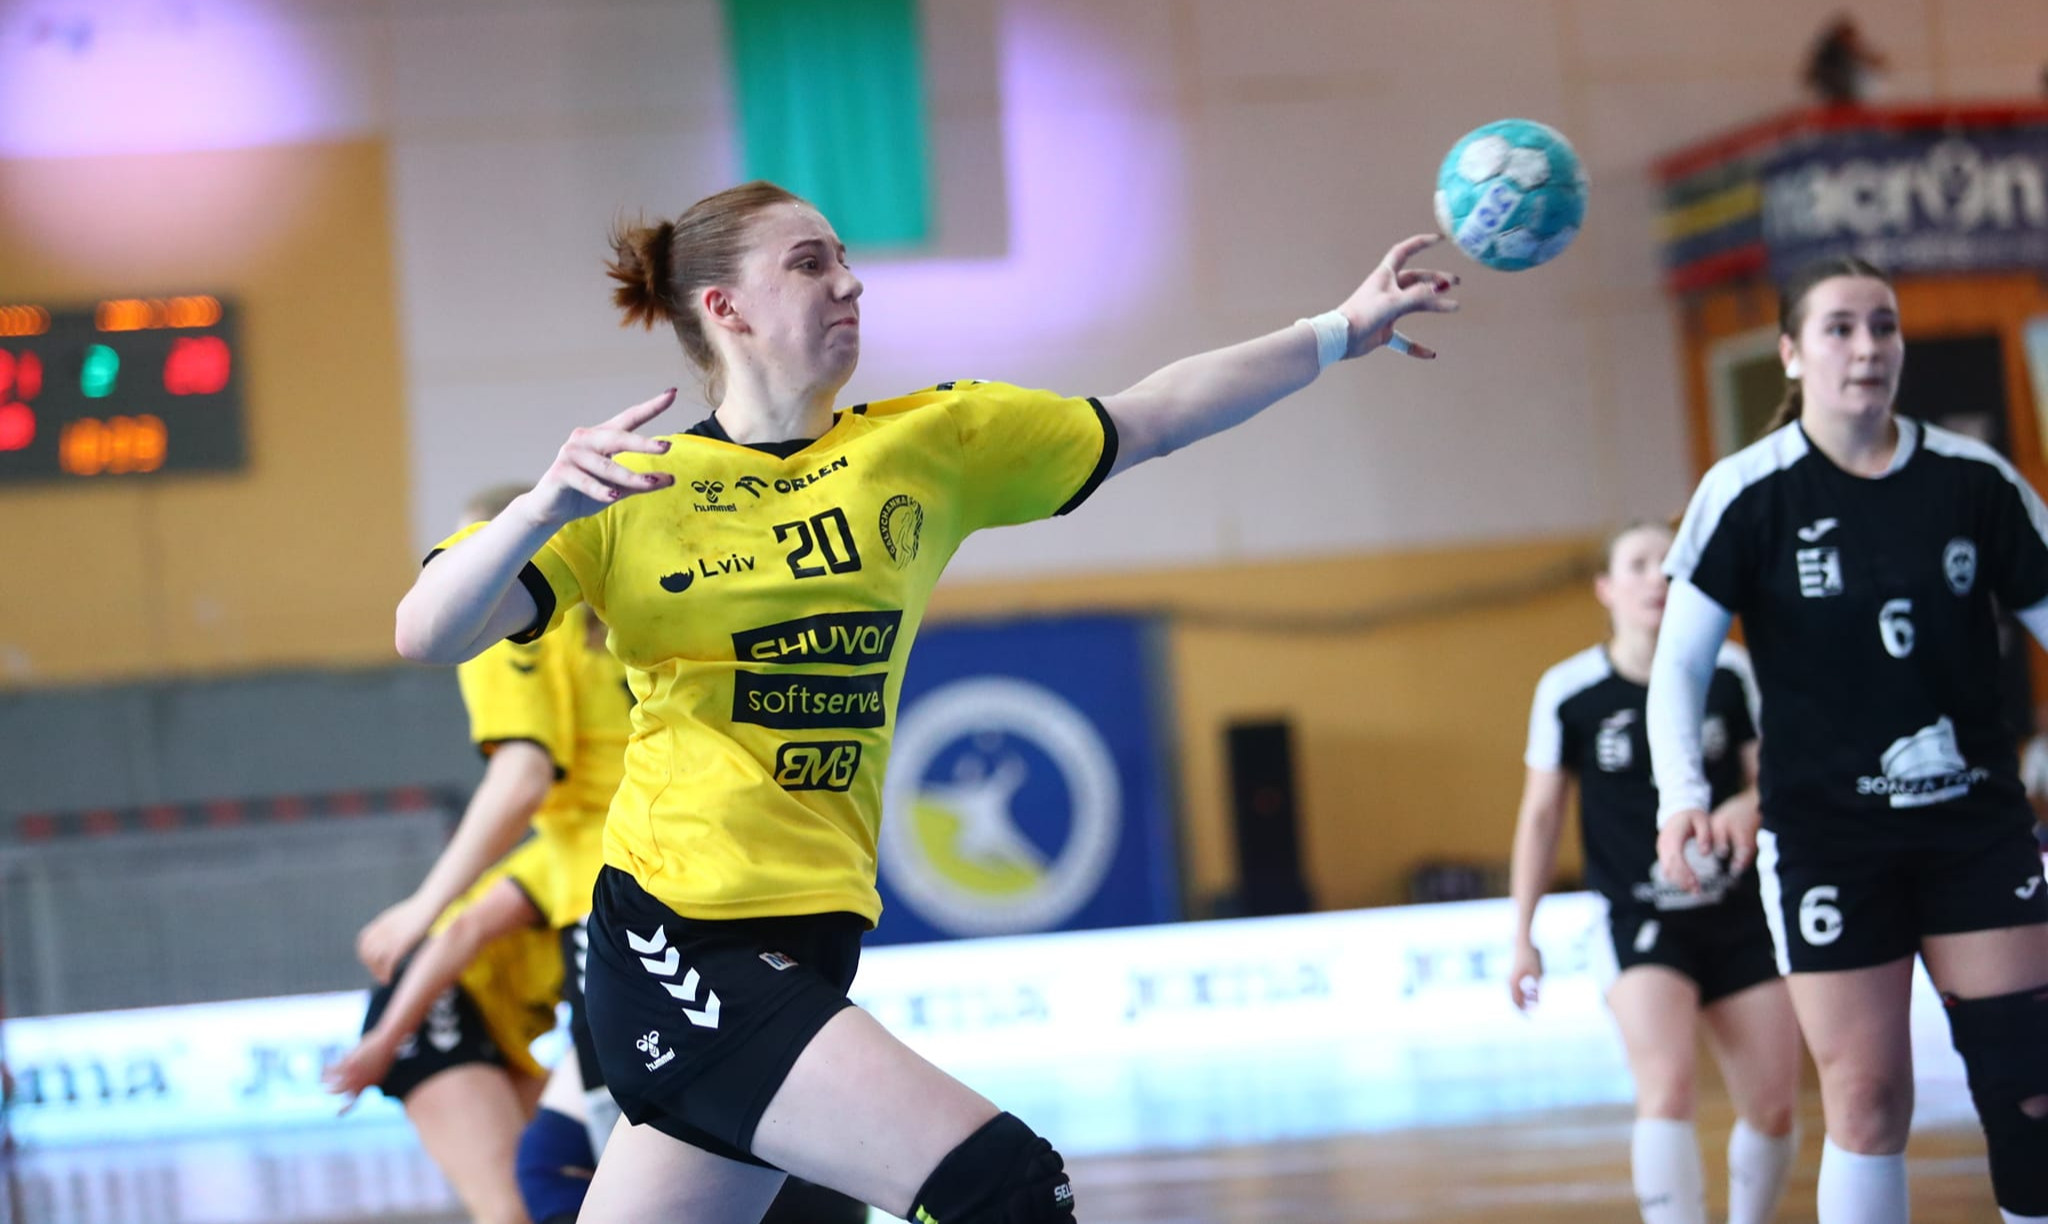 Галичанка выиграла Кубок Украины среди женщин